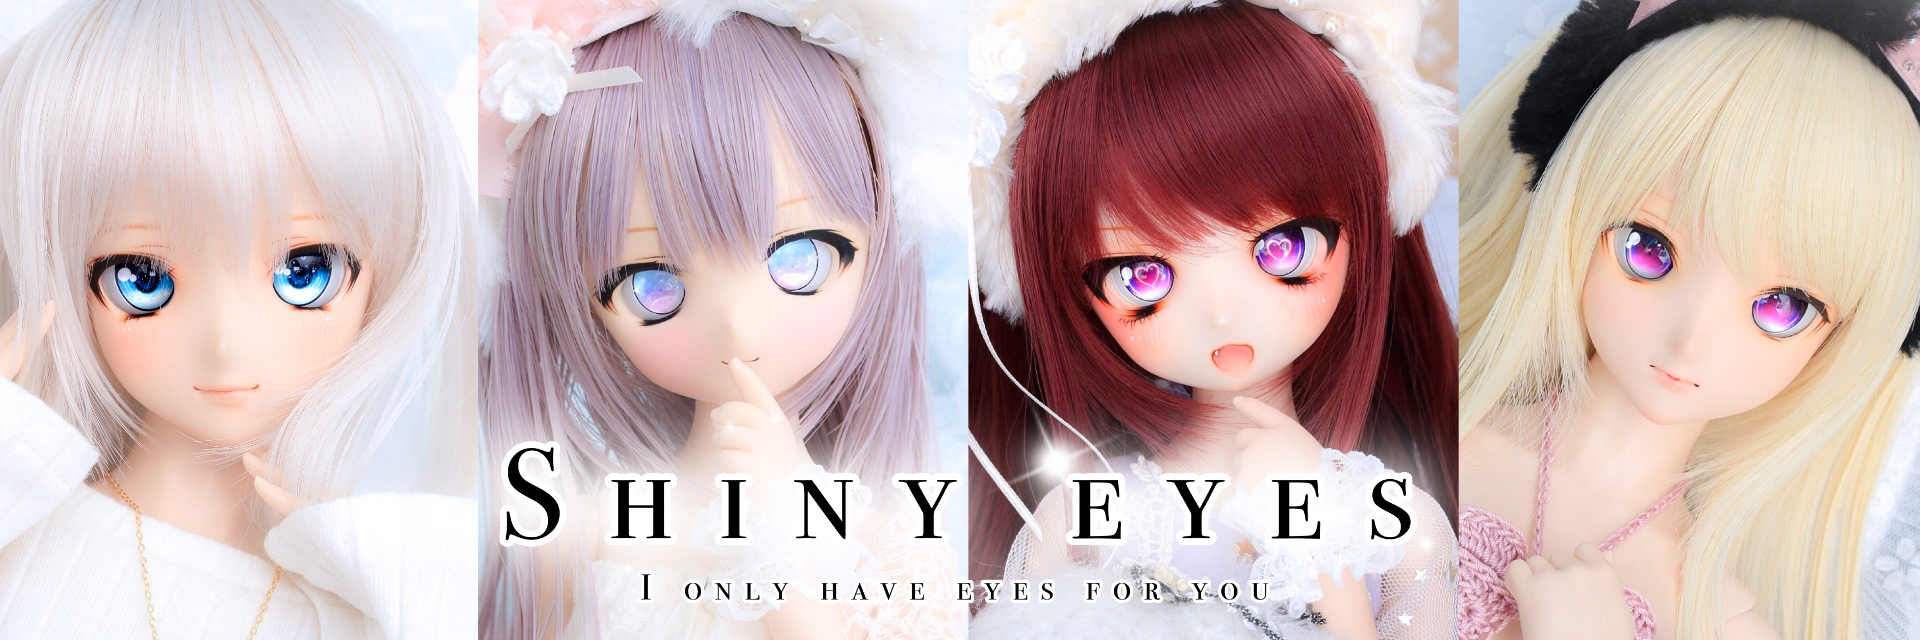 Shiny eyes_虹彩データSHOP